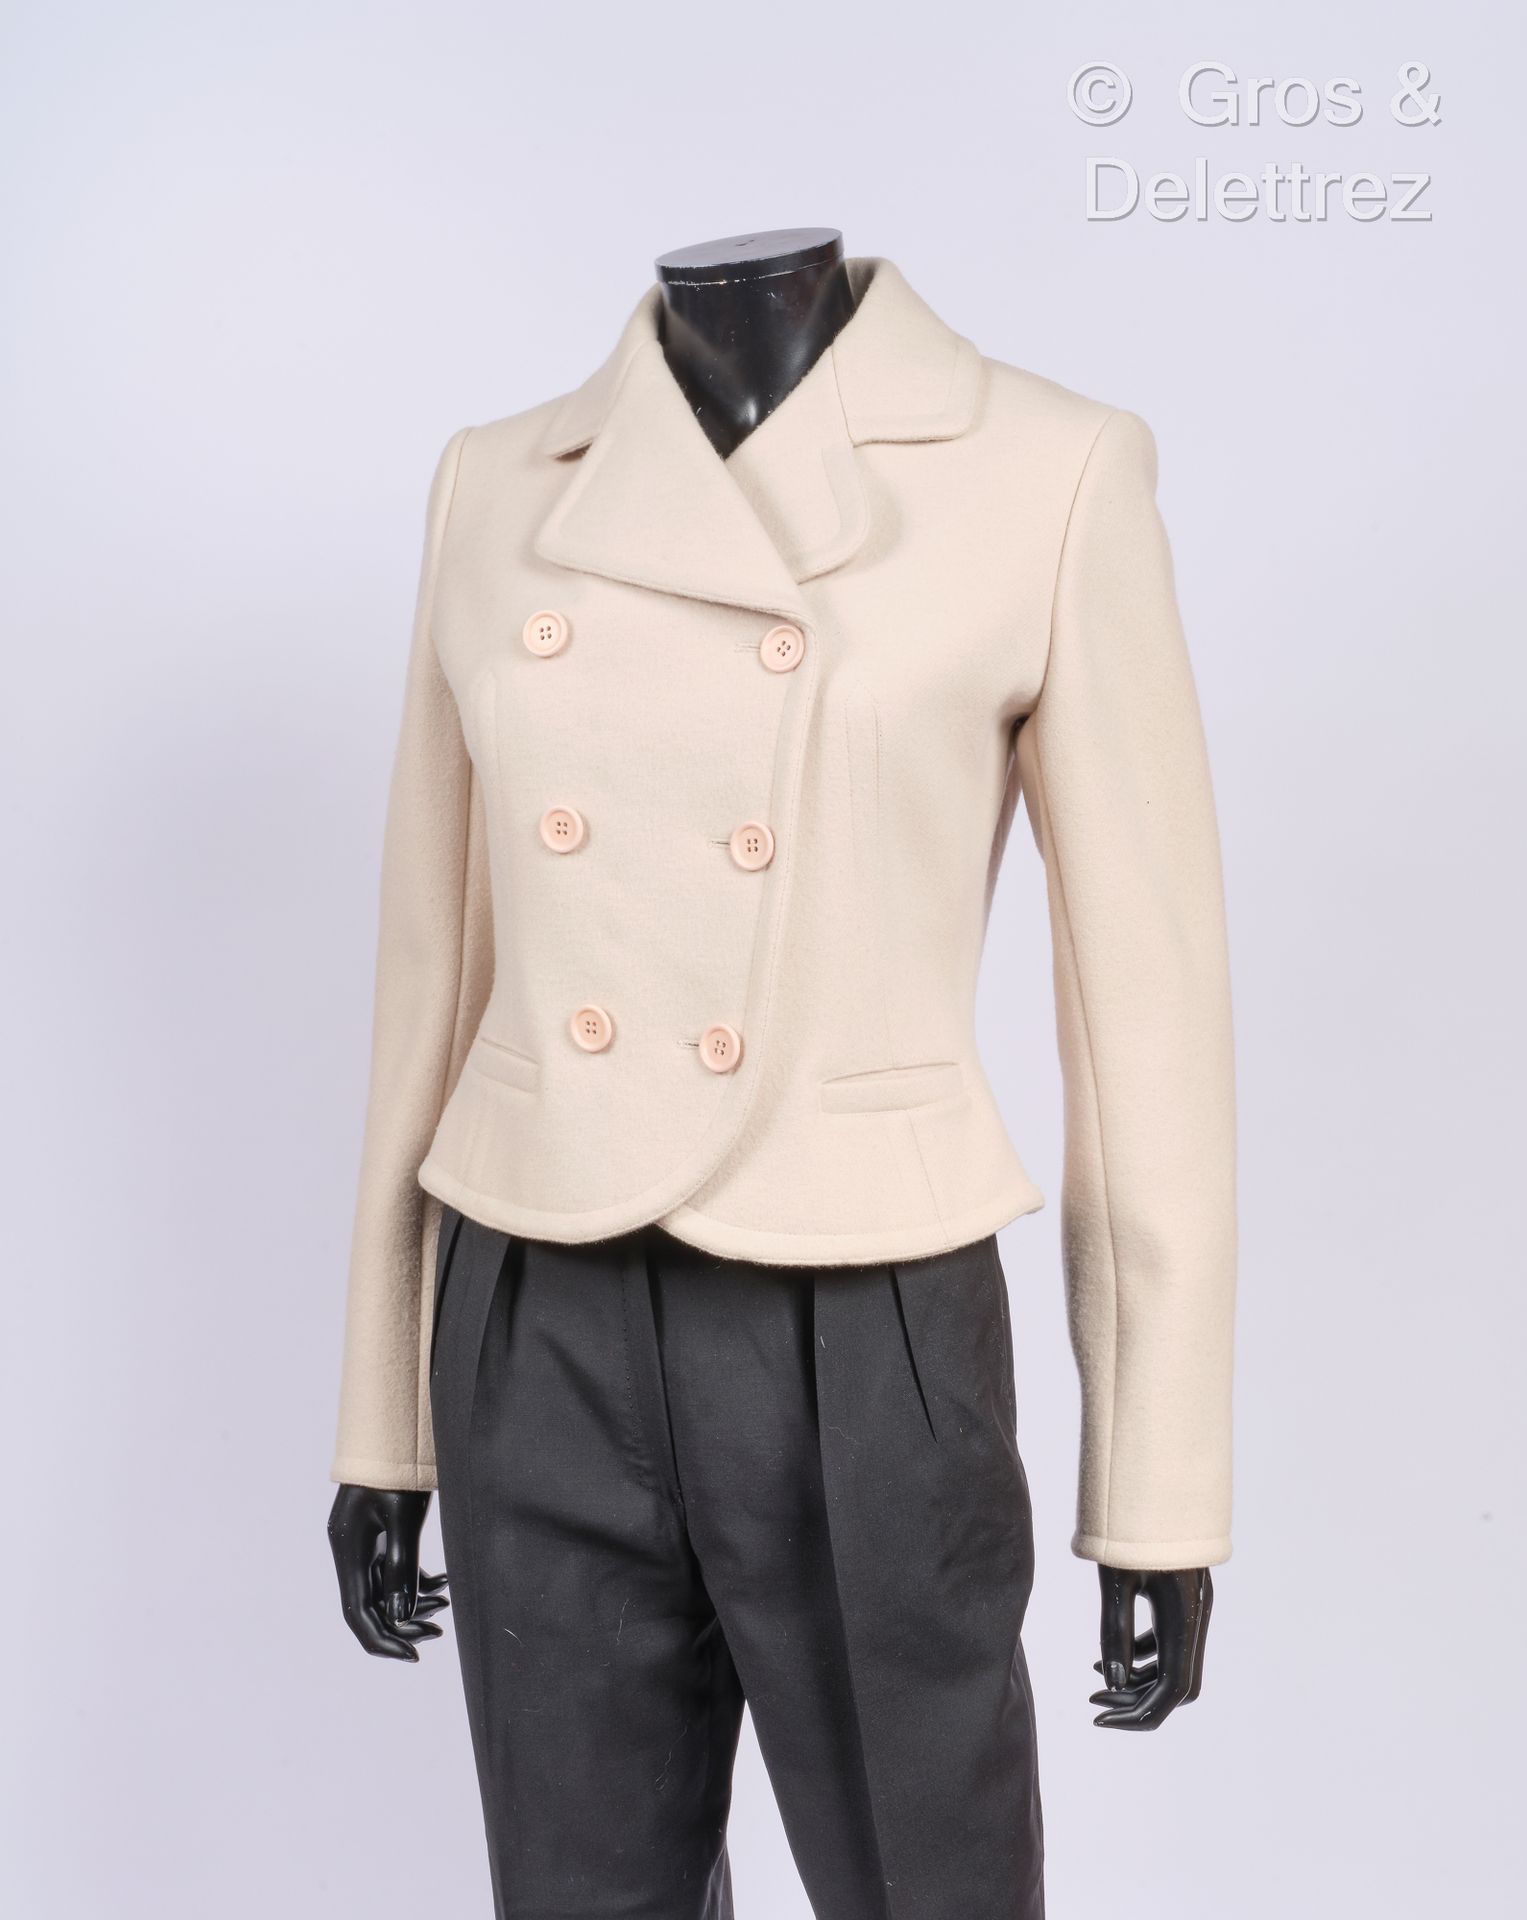 ALAÏA Herbst-/Winterkollektion 2008 - Modell "14h".
Kurze Jacke aus elfenbeinfar&hellip;